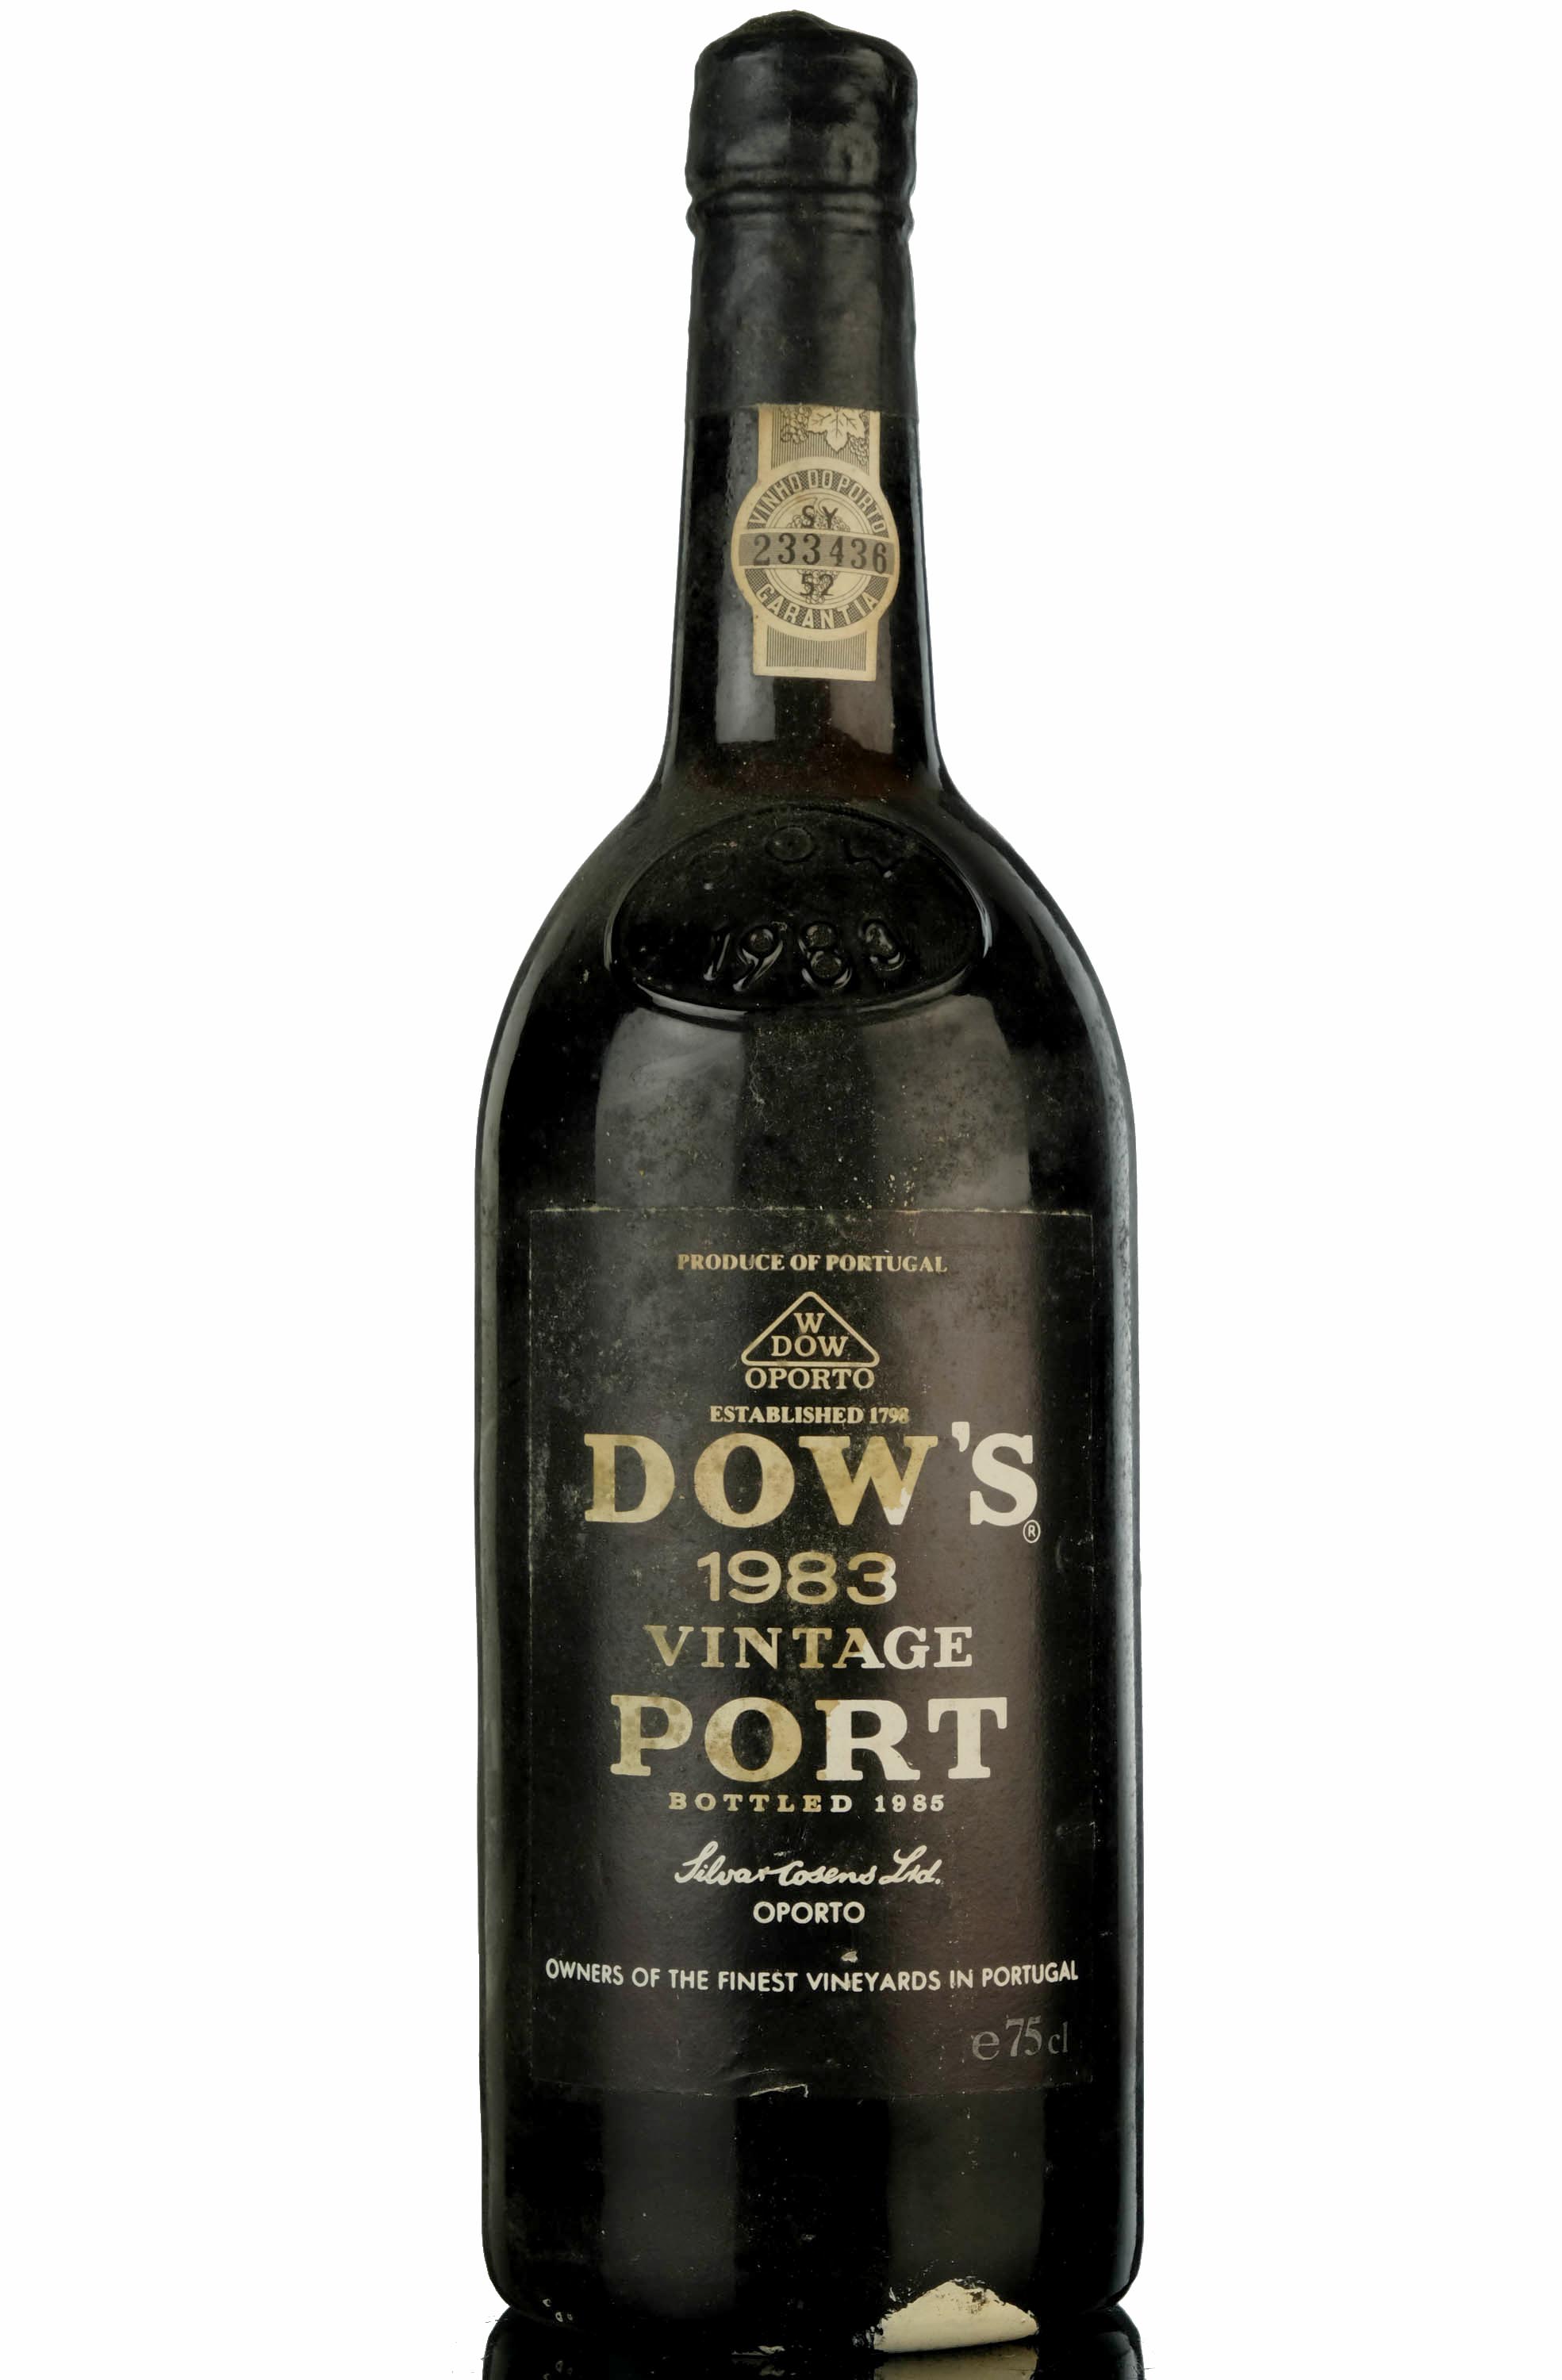 Dows 1983 Vintage Port - Bottled 1985